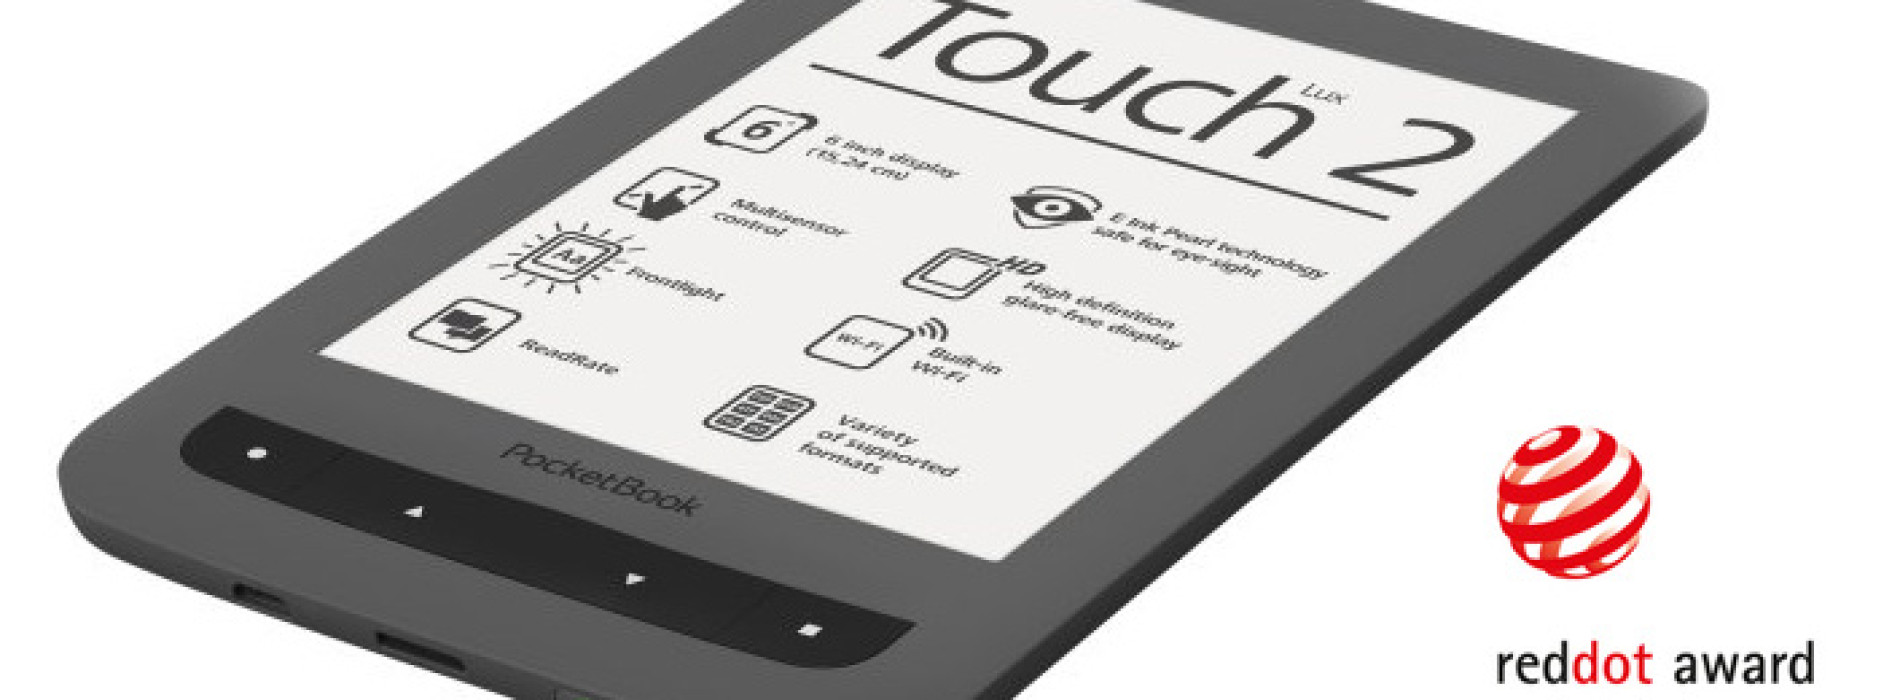 Čtečka PocketBook Touch Lux 2 získala ocenění Red Dot Award 2014